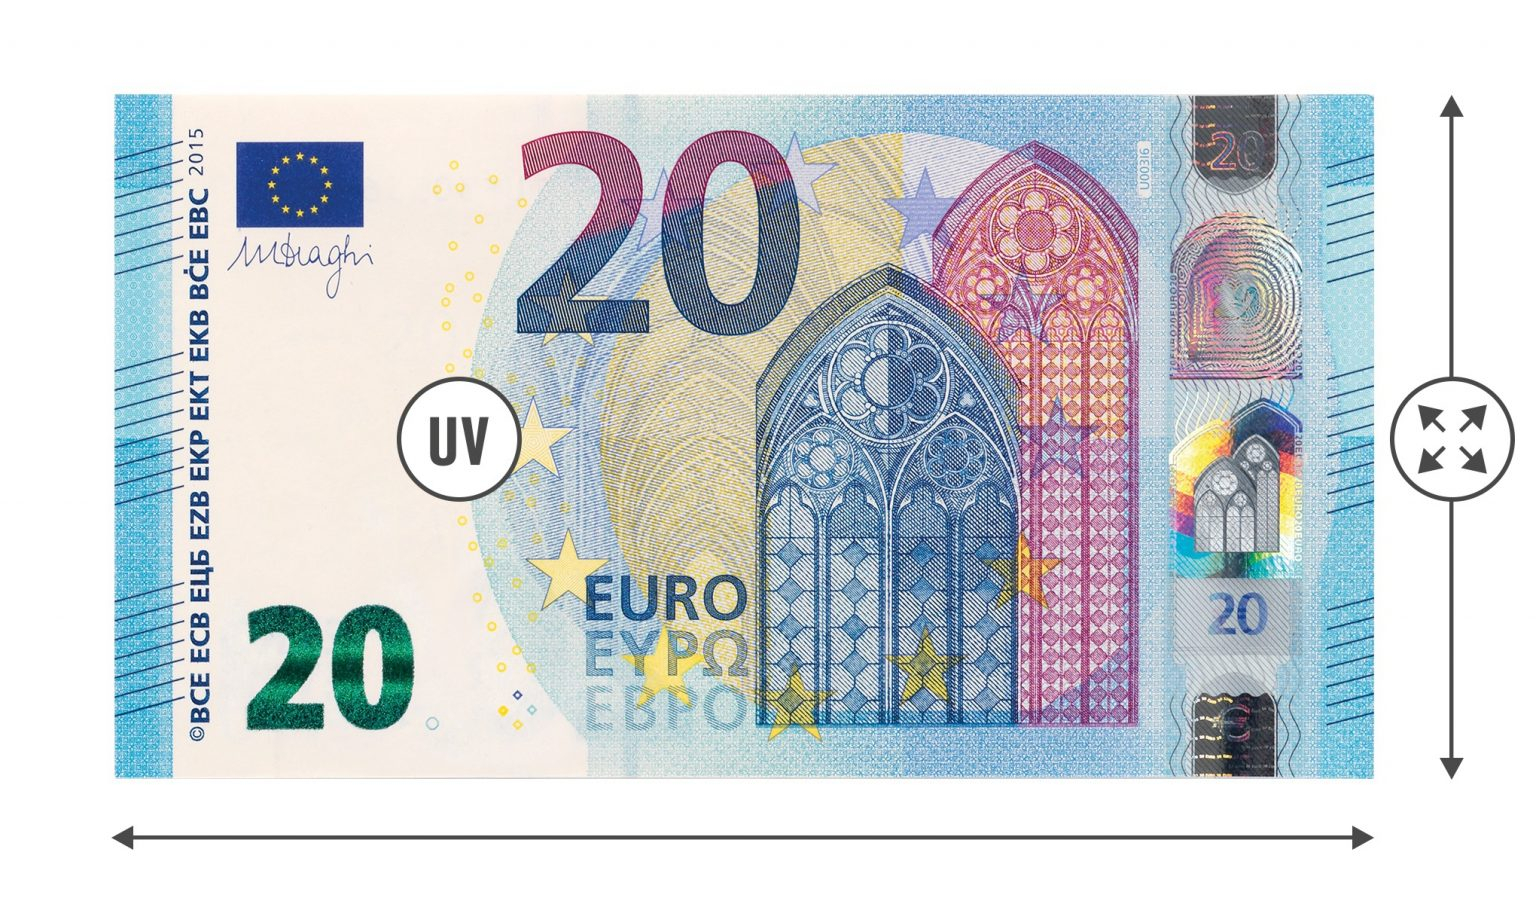 Safescan 2210 Tout Billet De 5 Euros À Imprimer | Primanyc encequiconcerne Billet De 5 Euros À Imprimer